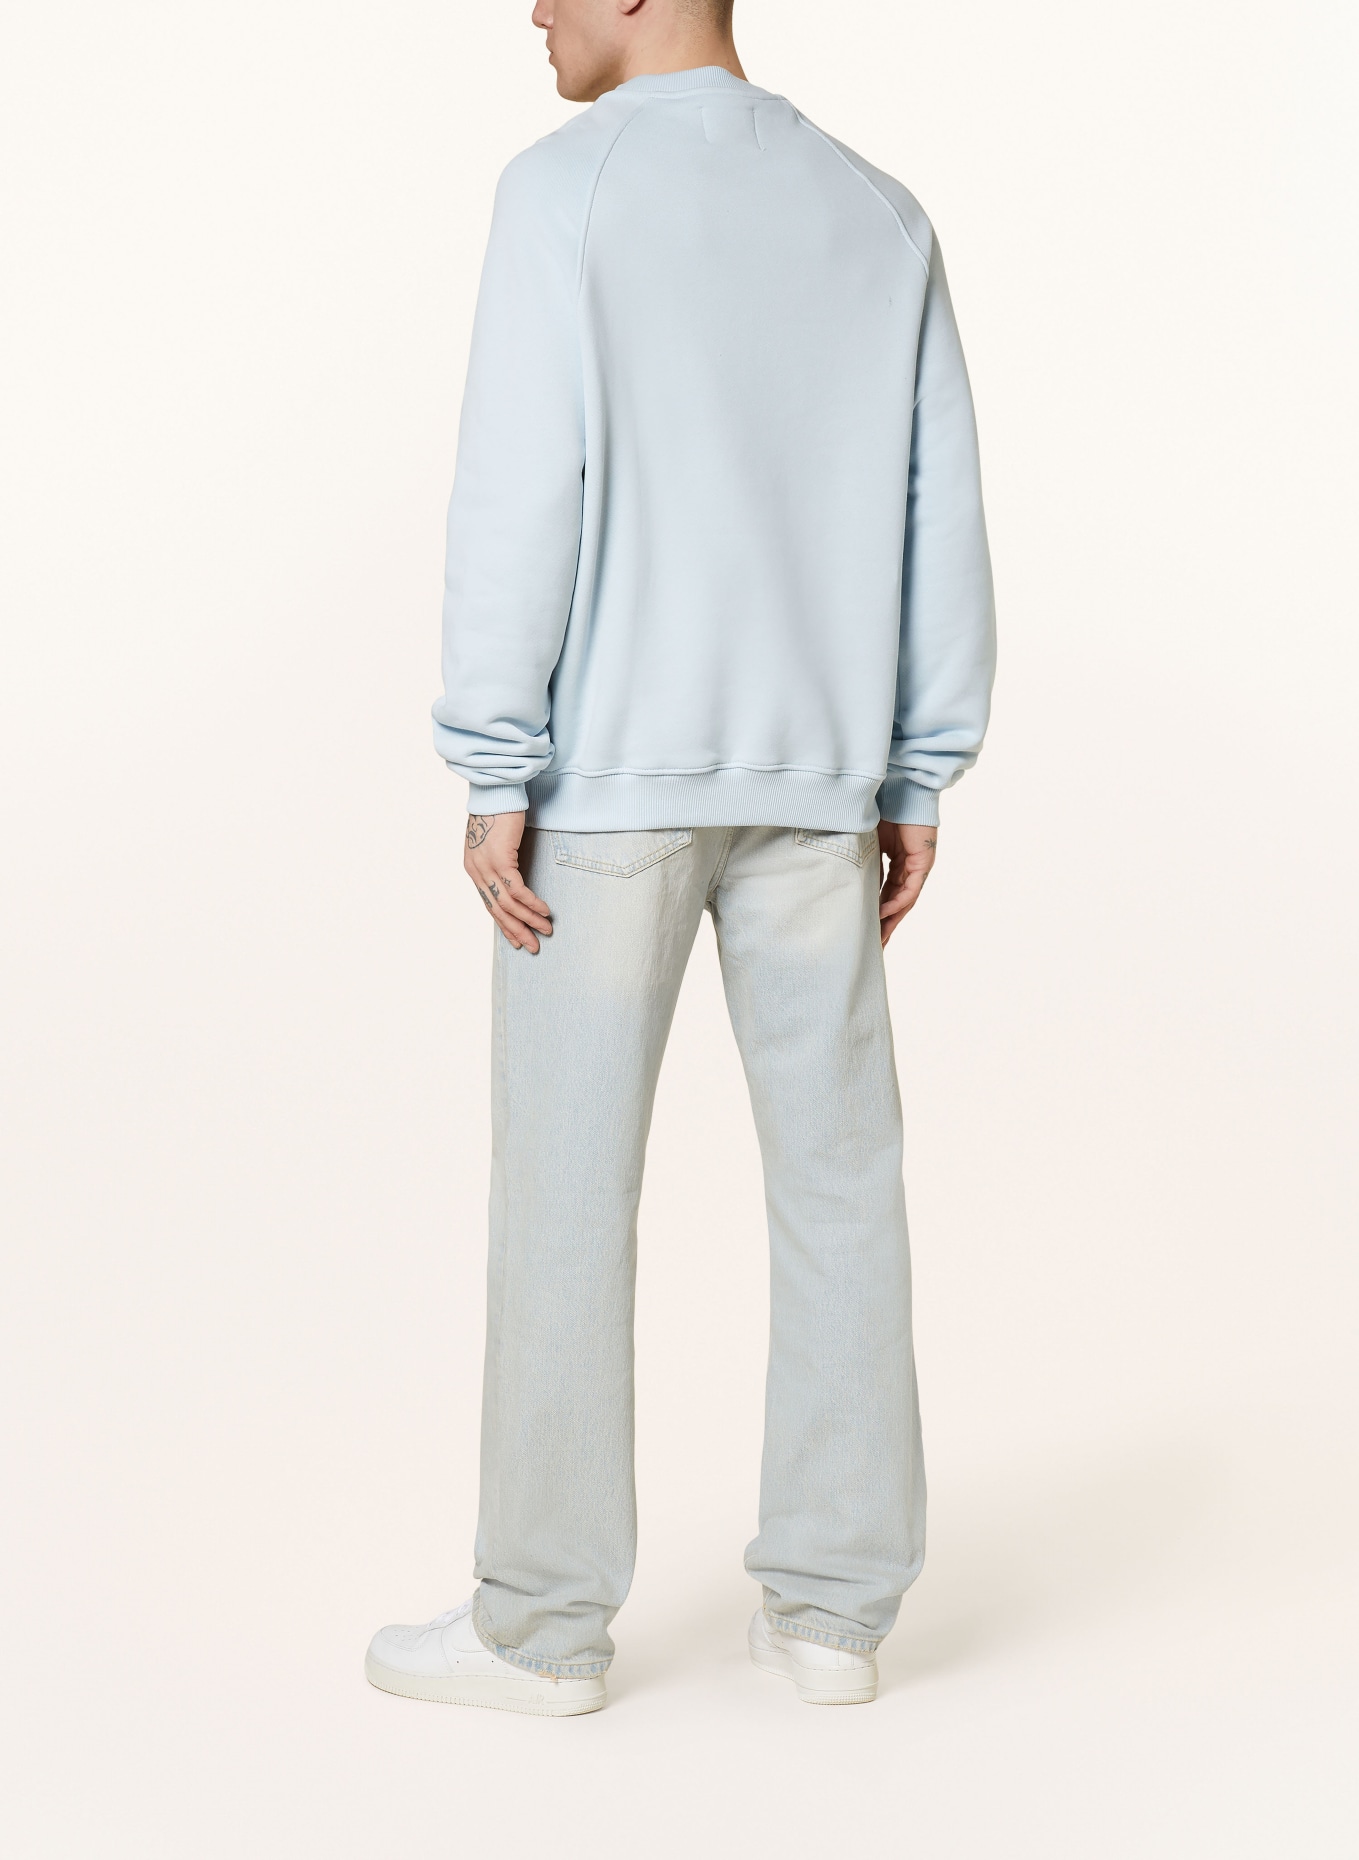 PEQUS Sweatshirt, Color: LIGHT BLUE (Image 3)